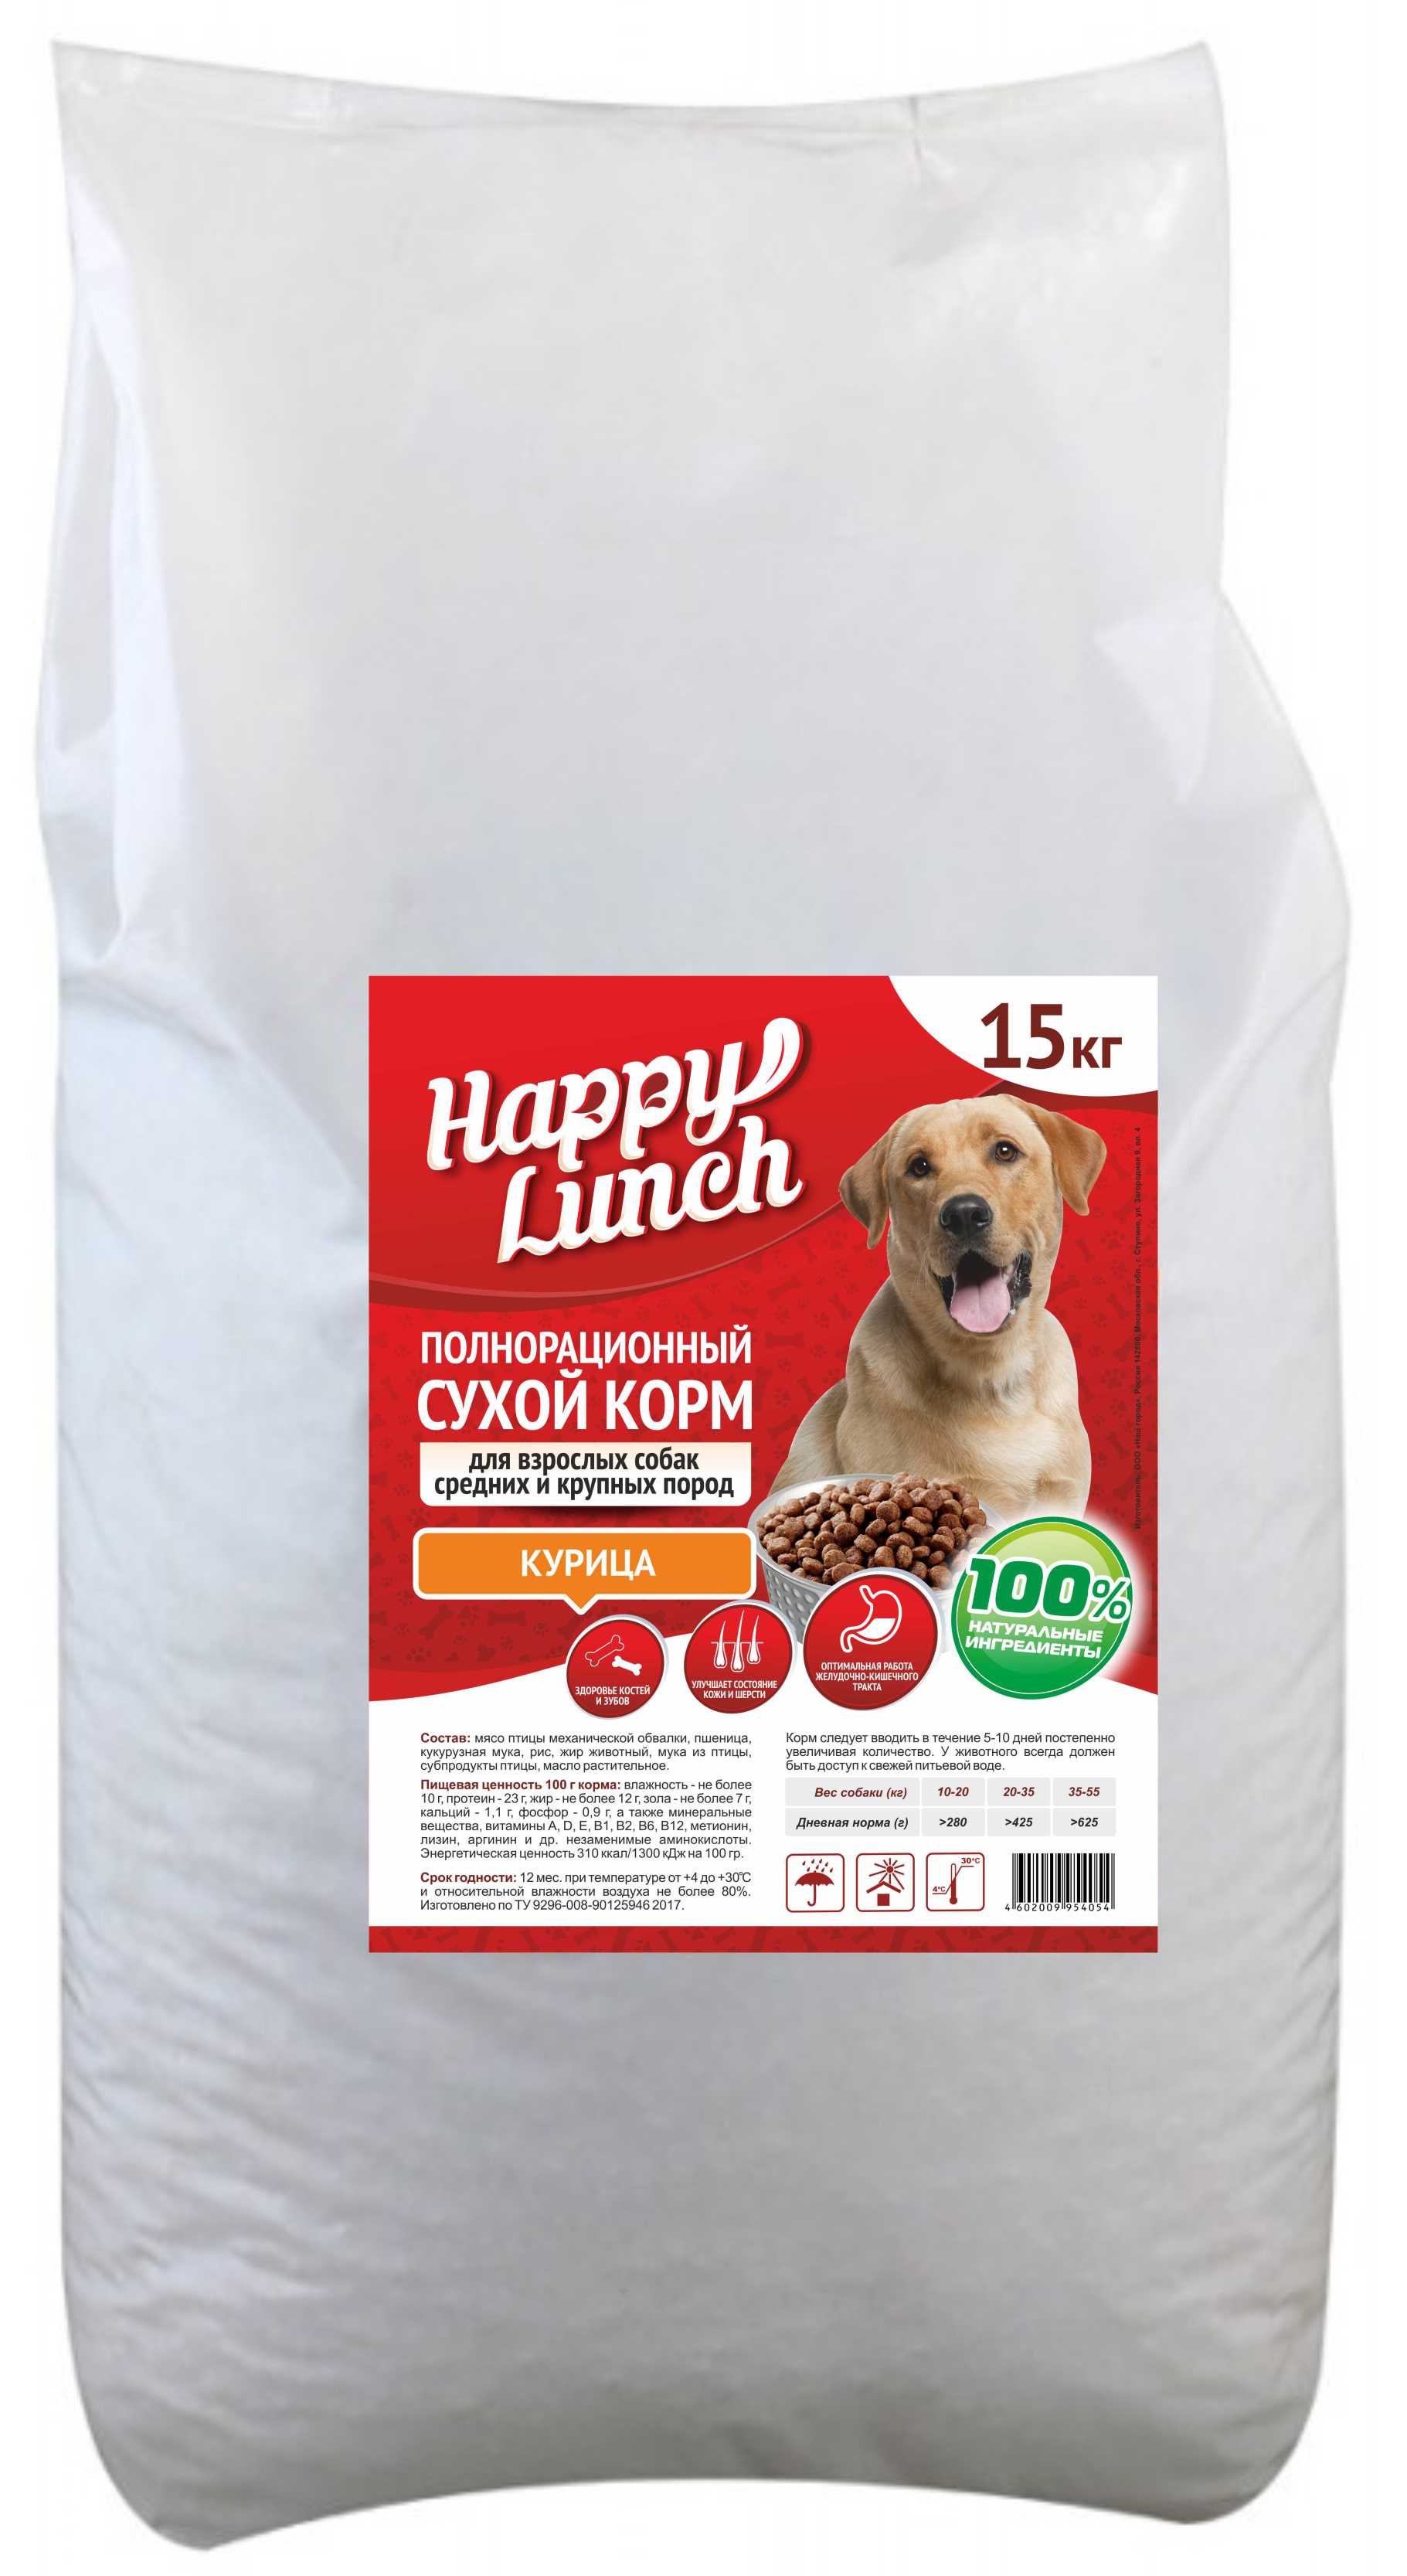 Happy Lunch сухой корм д/взрослых собак средних и крупных пород (курица) 15 кг 1